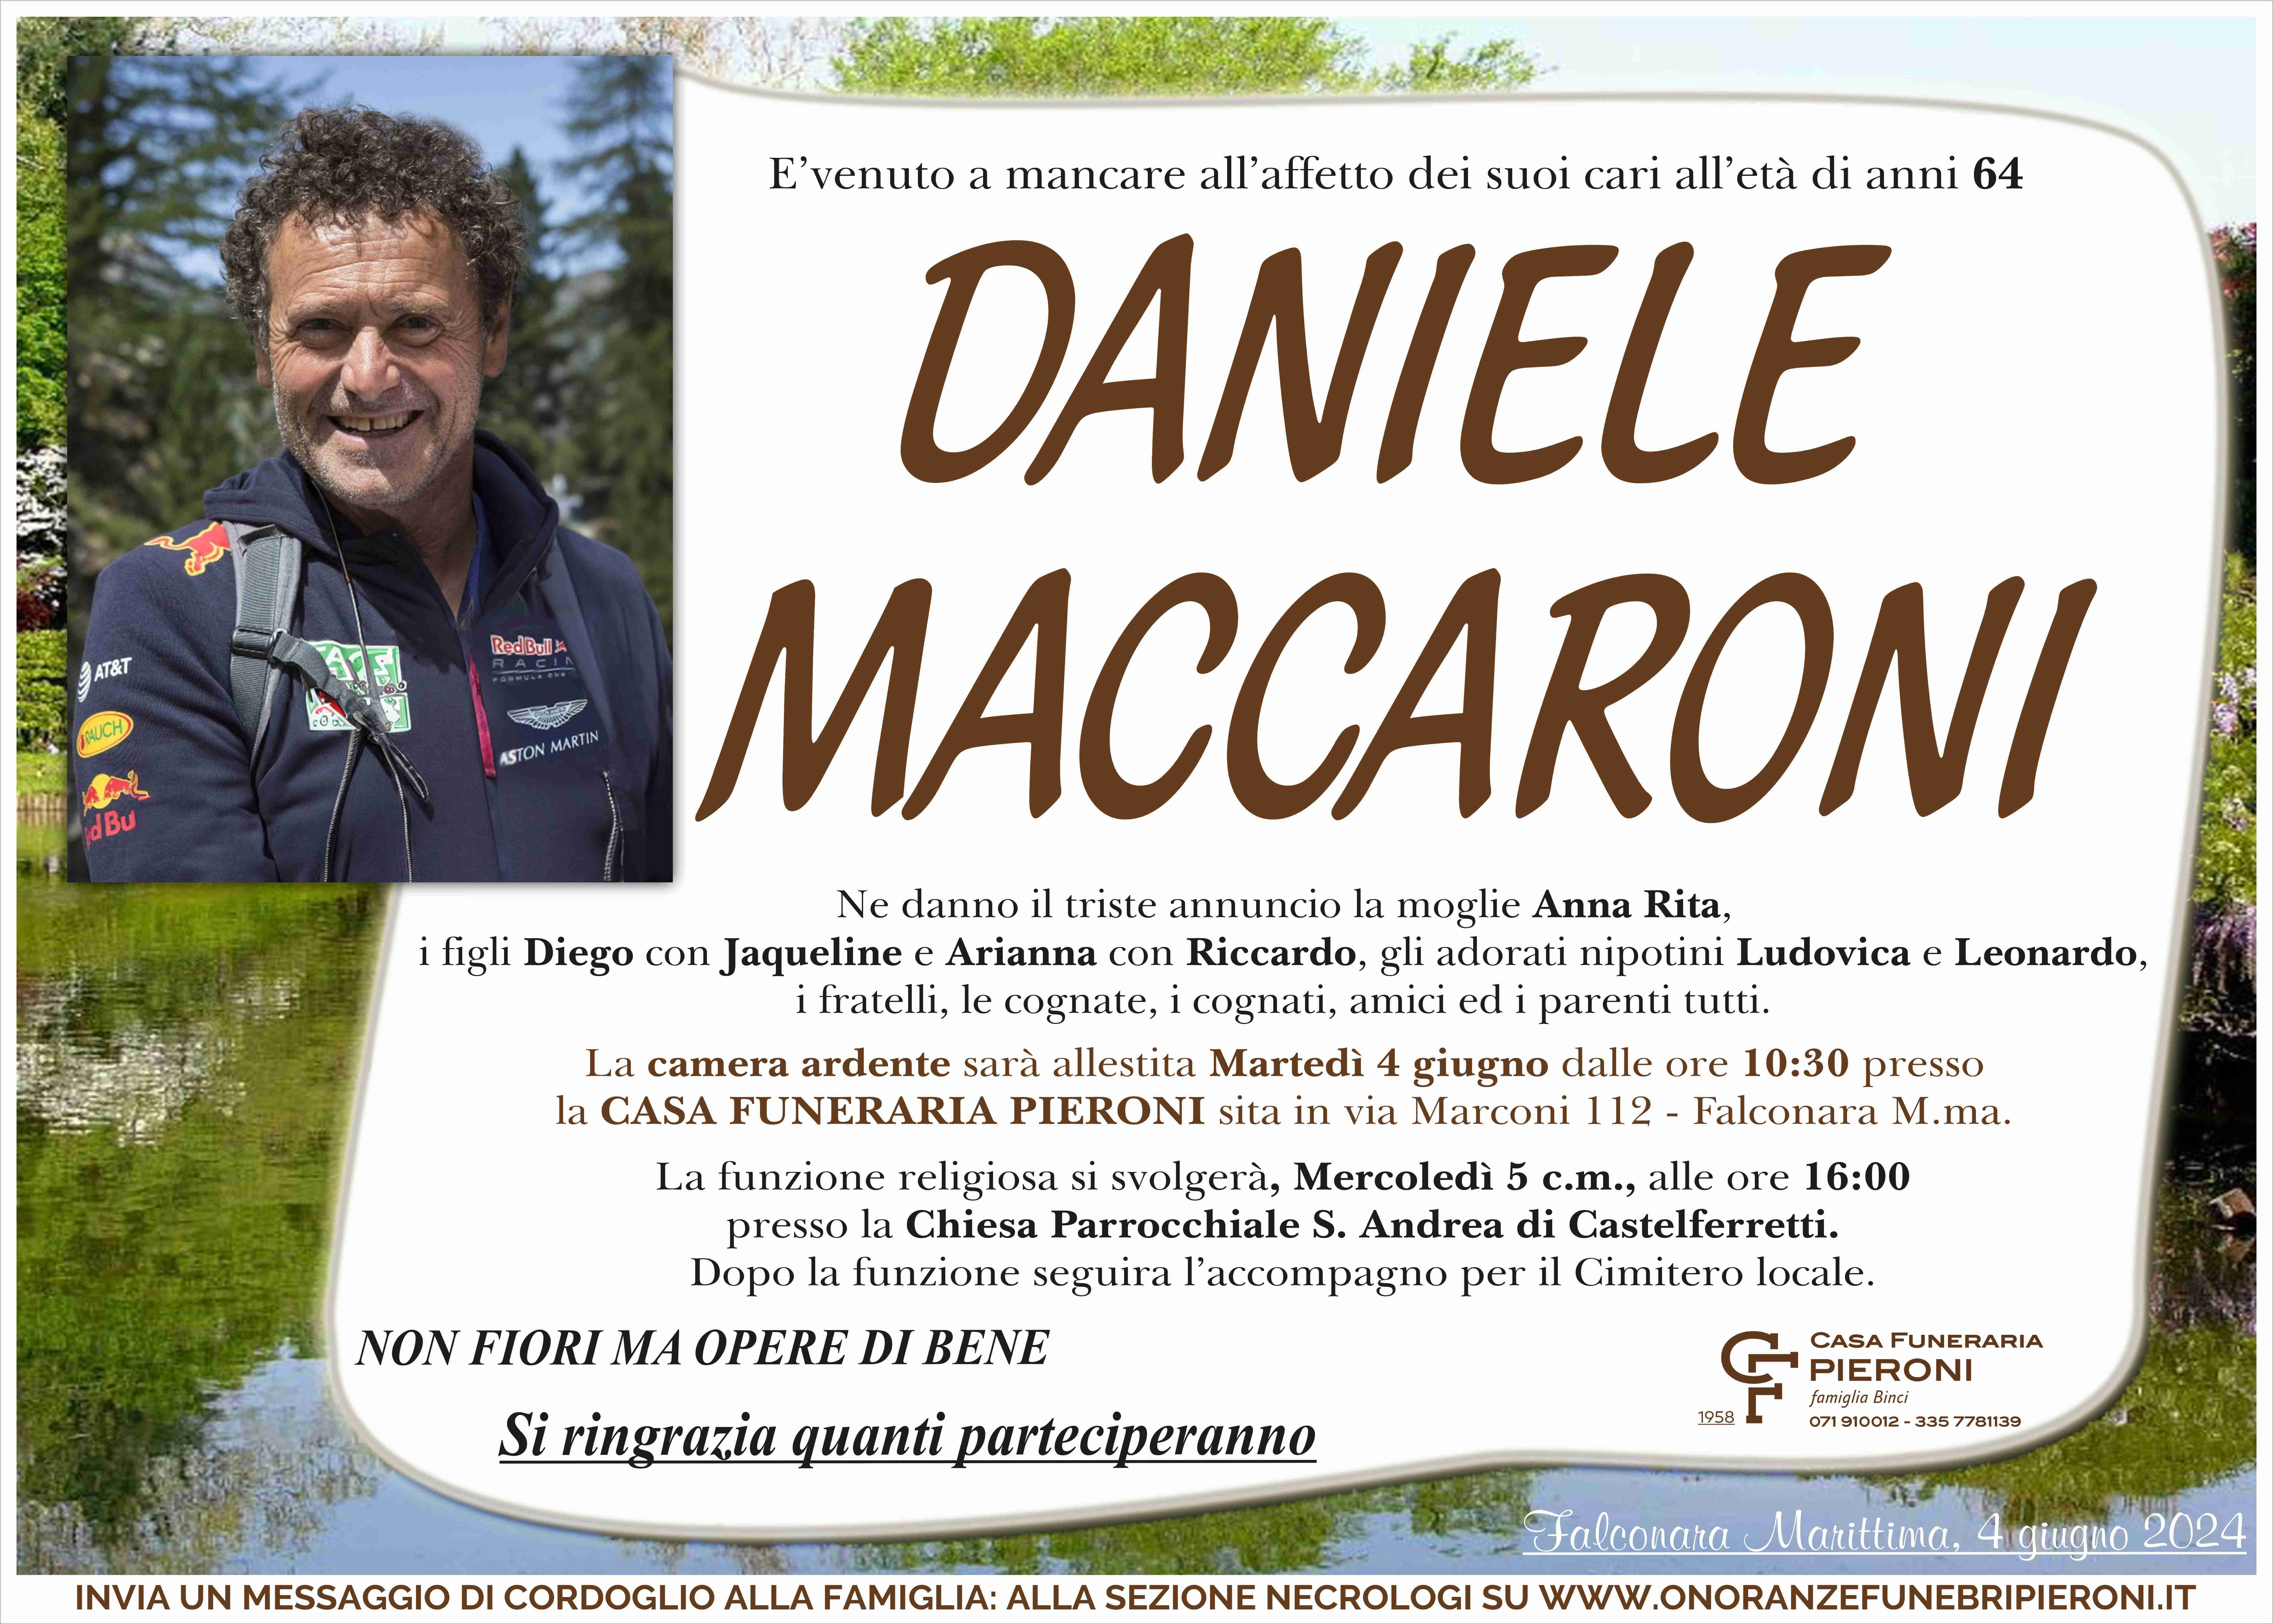 Daniele Maccaroni